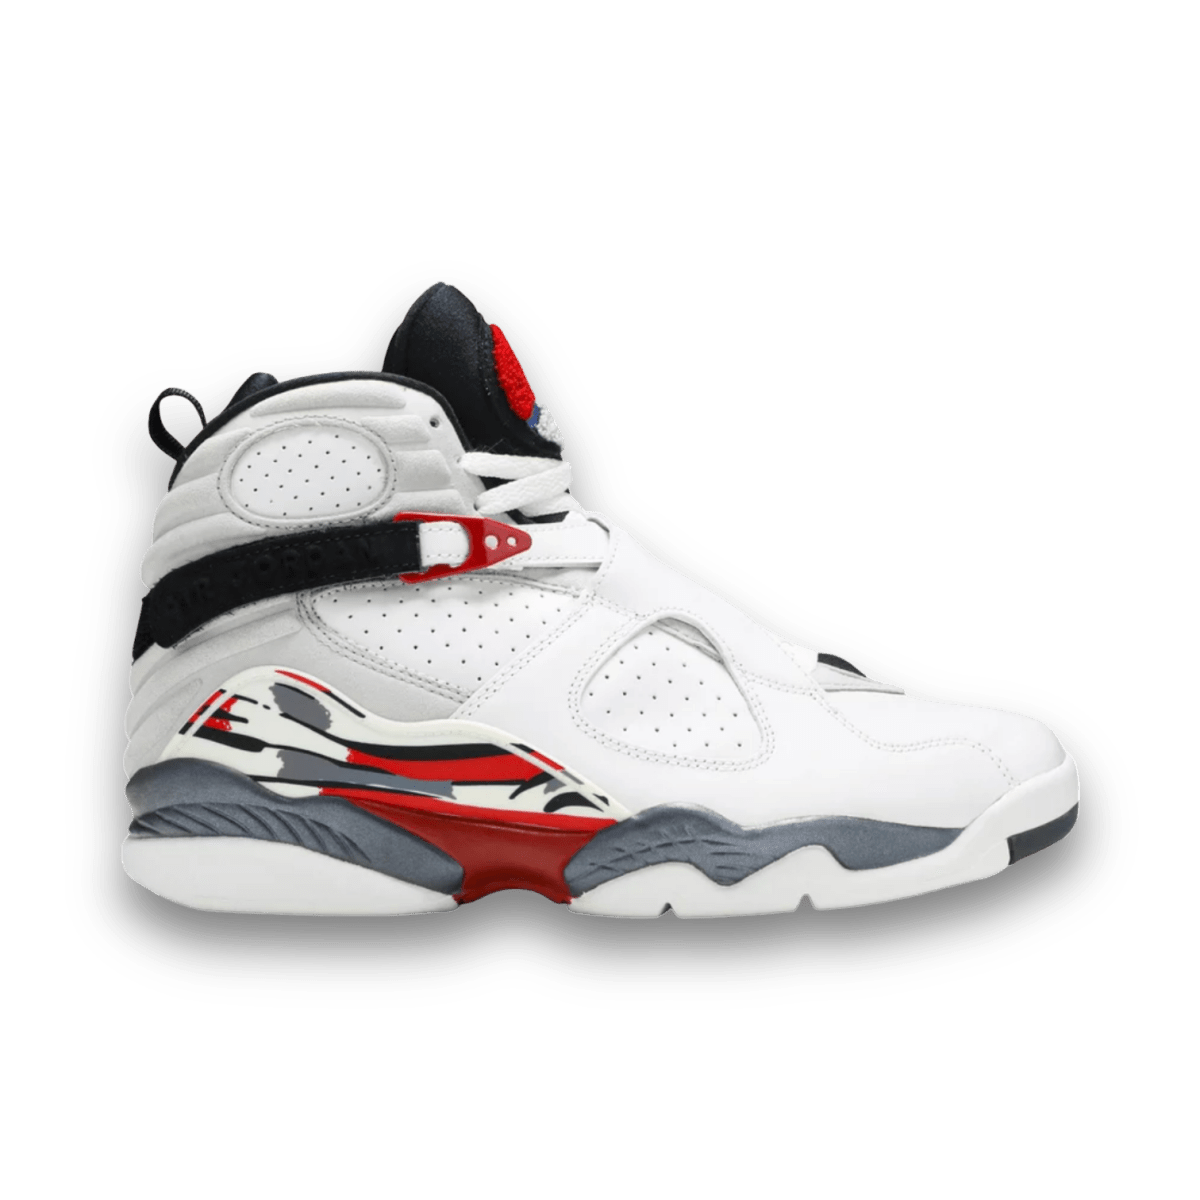 Air Jordan 8 Retro 'Countdown Pack' 2008 - High Sneaker - Jawns on Fire Sneakers & Streetwear